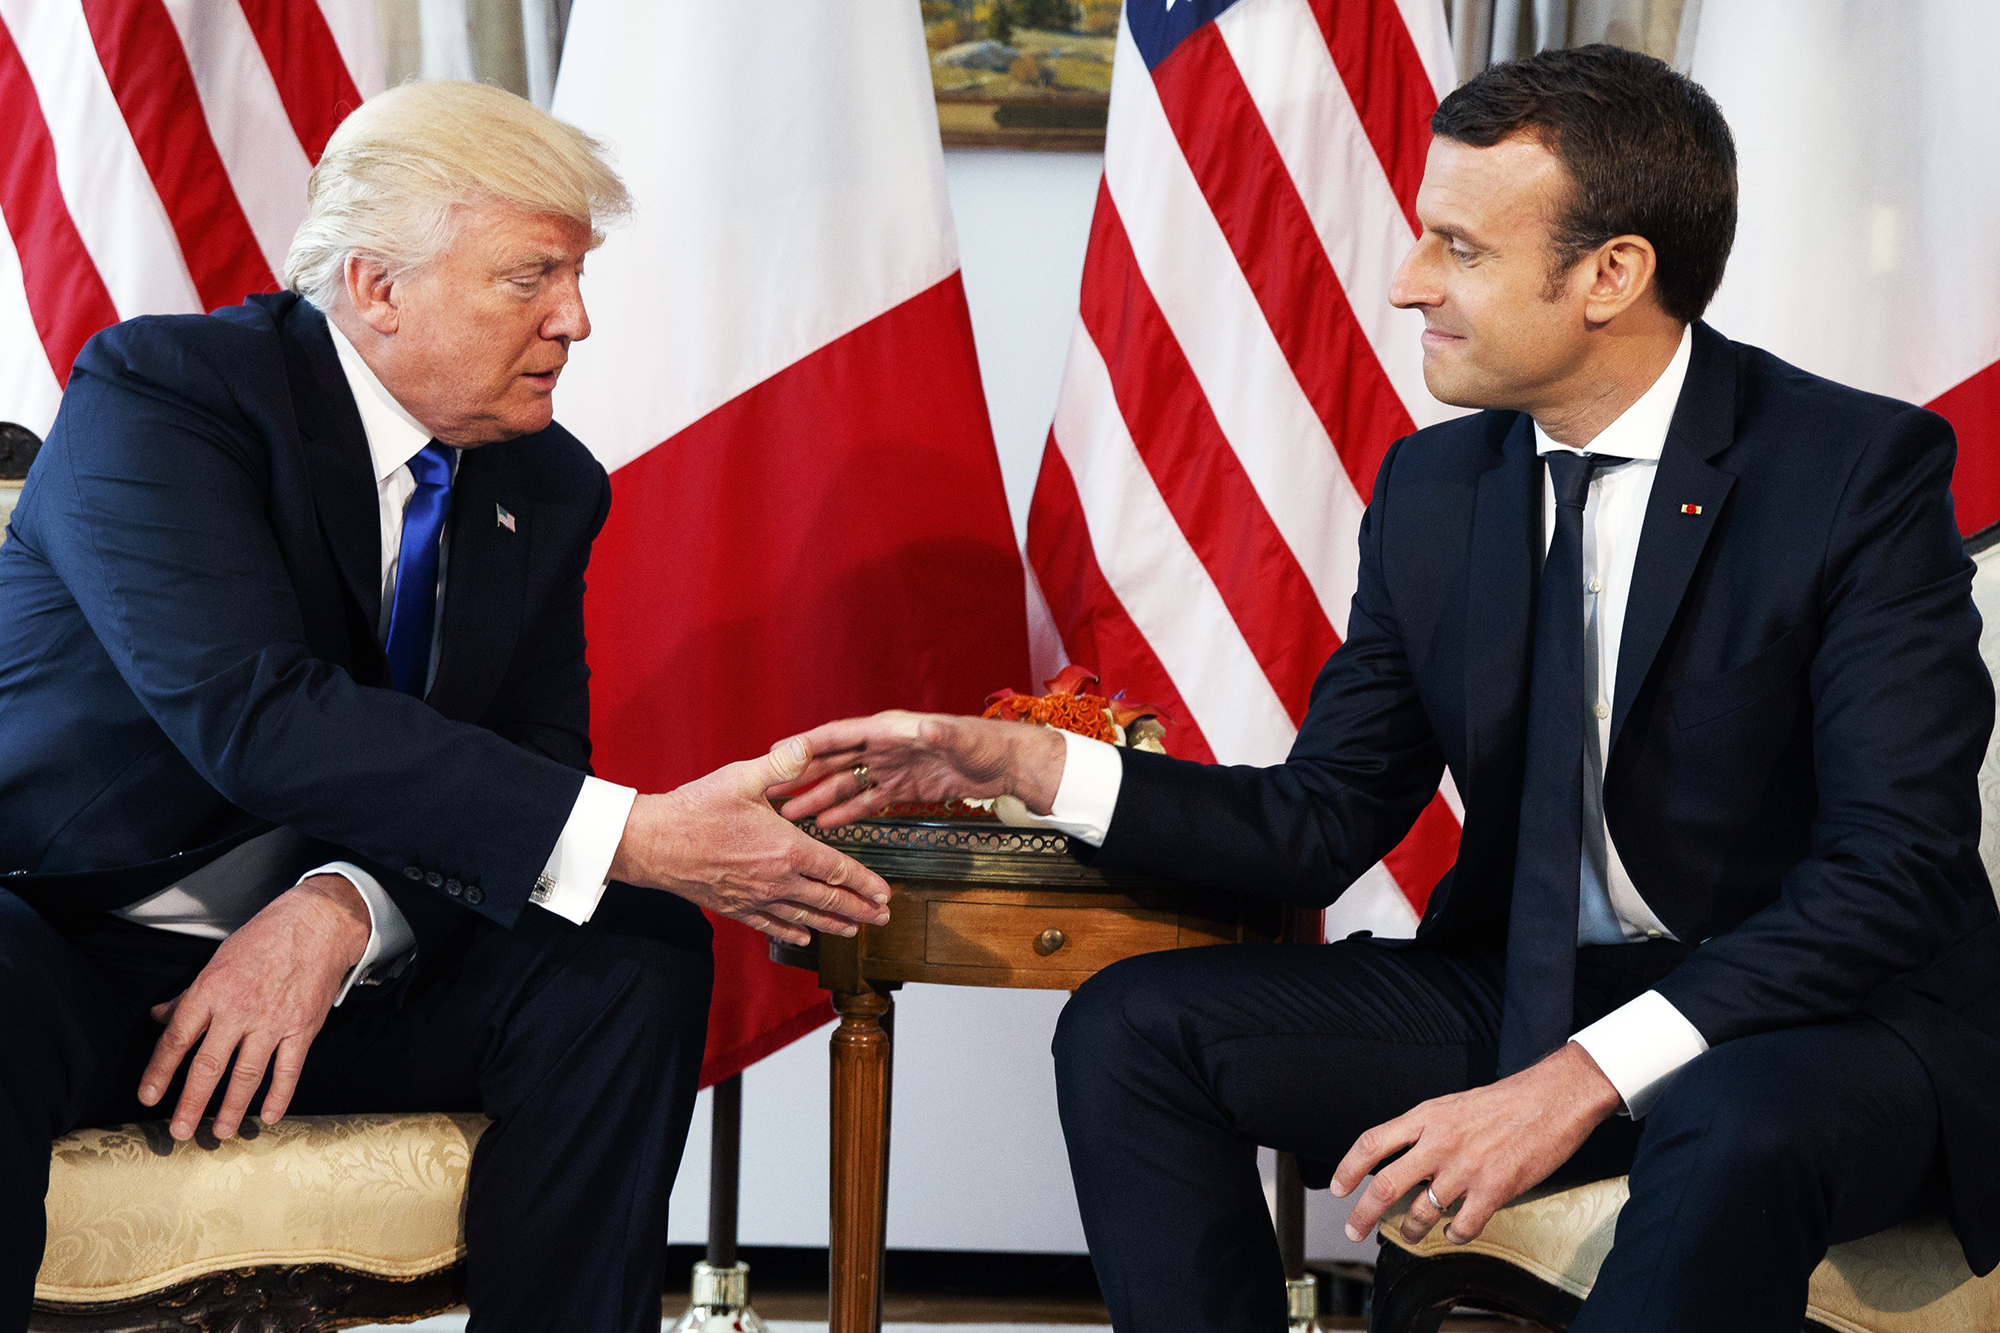 Donald Trump,Emmanuel Macron